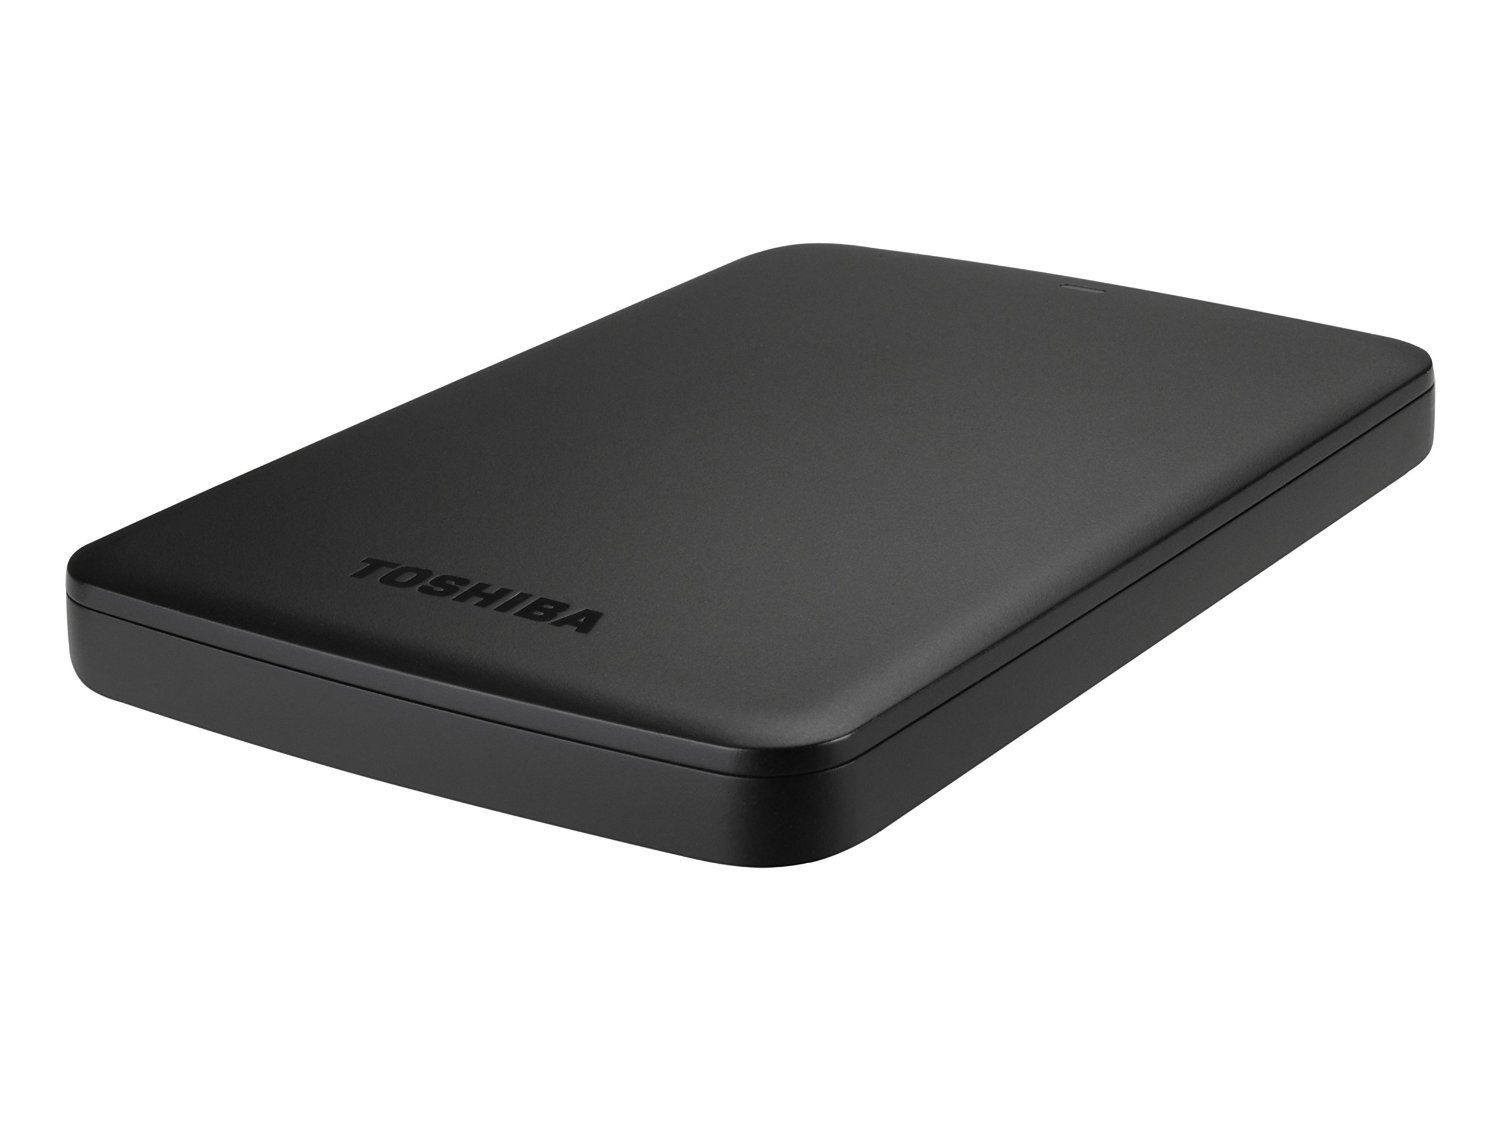 enchufe Nabo tranquilo Toshiba Canvio Basics: miles de usuarios eligen este disco duro portátil.